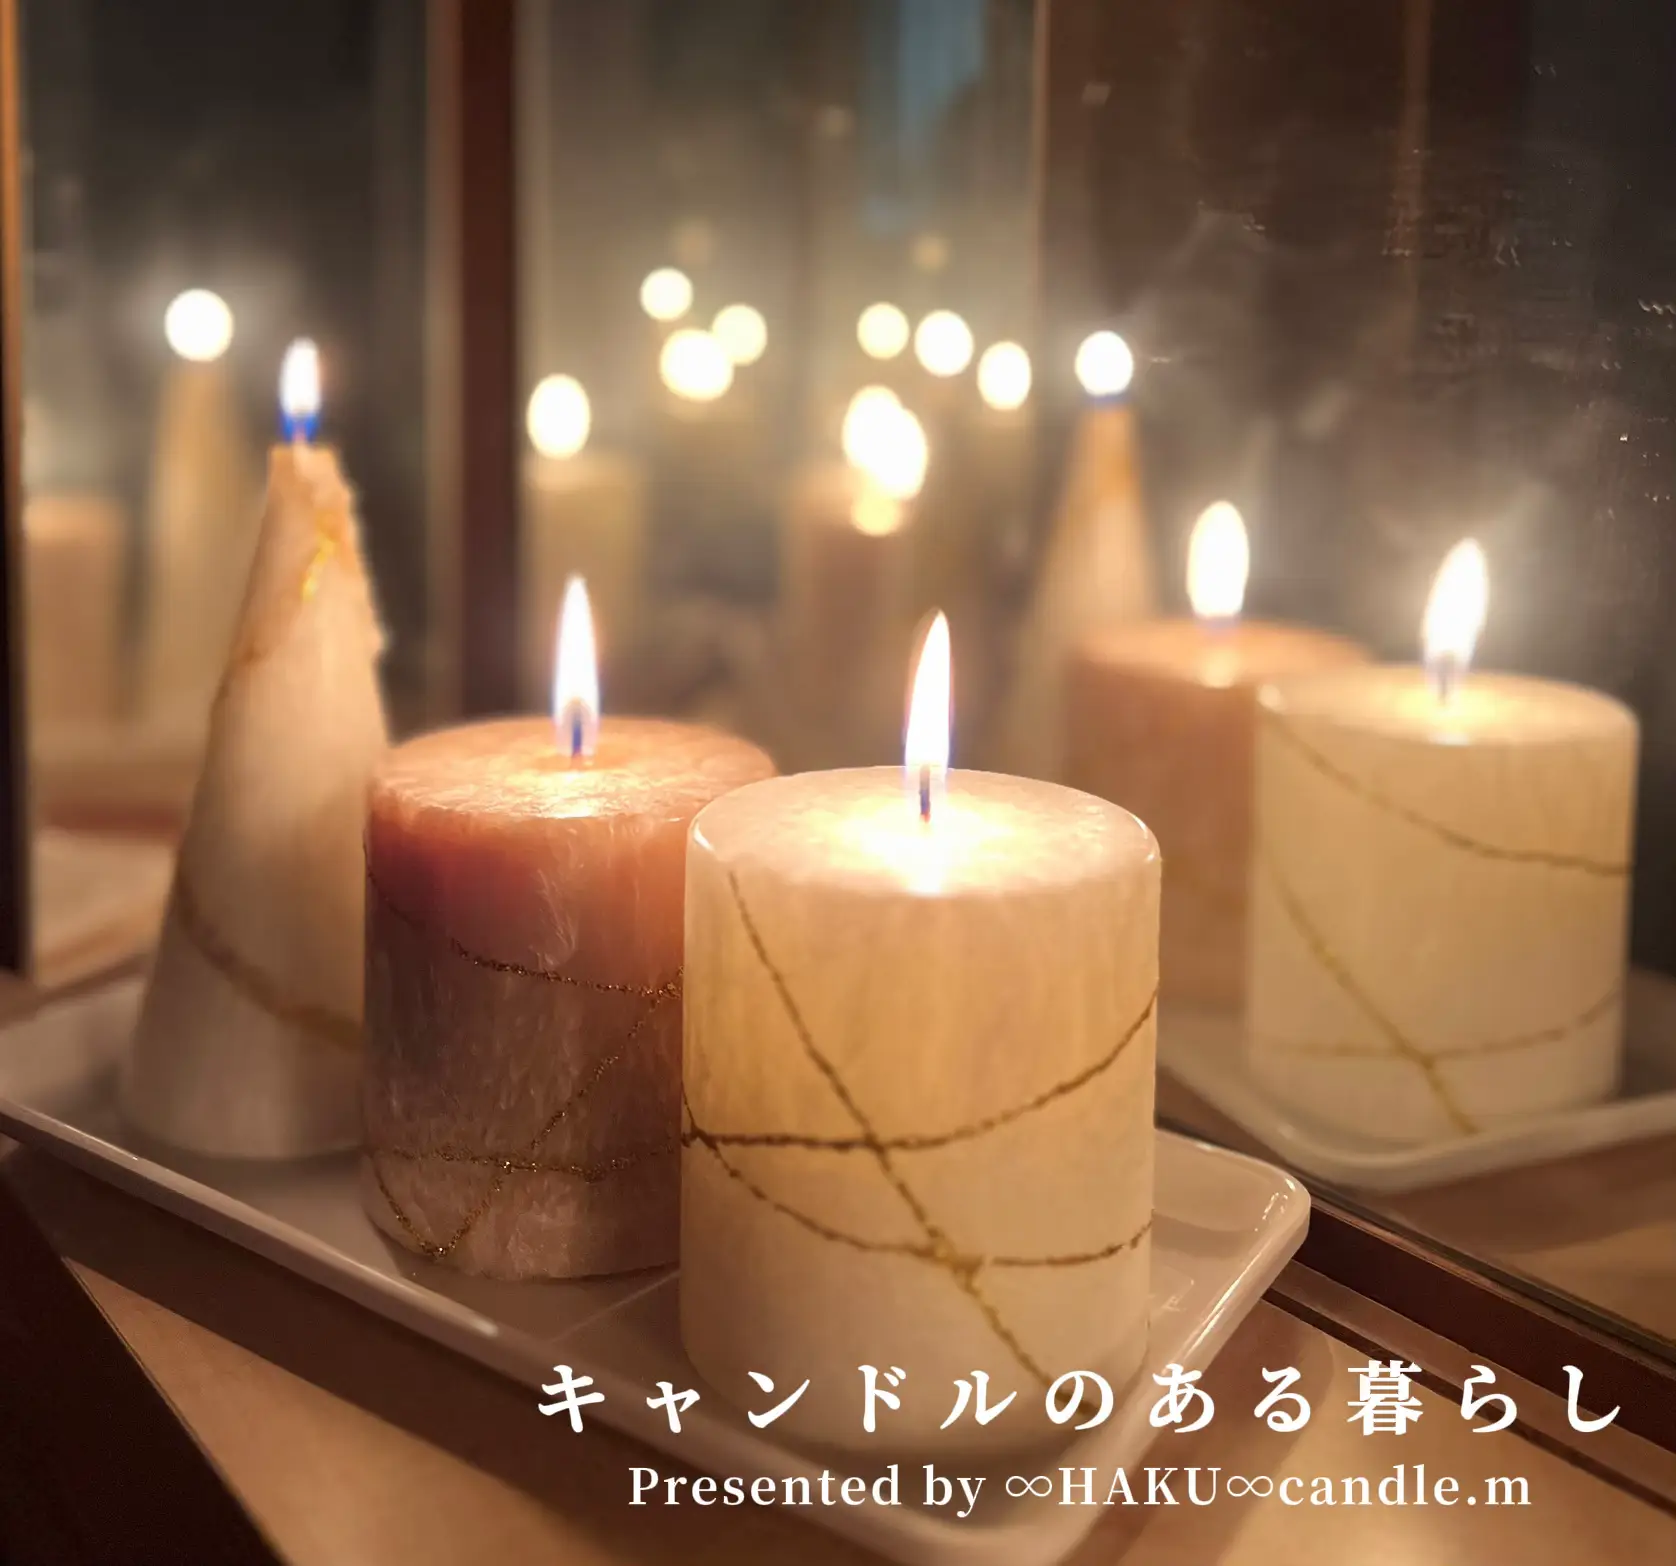 聖夜に灯す癒しのキャンドル🕯 | ∞HAKU∞ candle.mが投稿したフォト ...